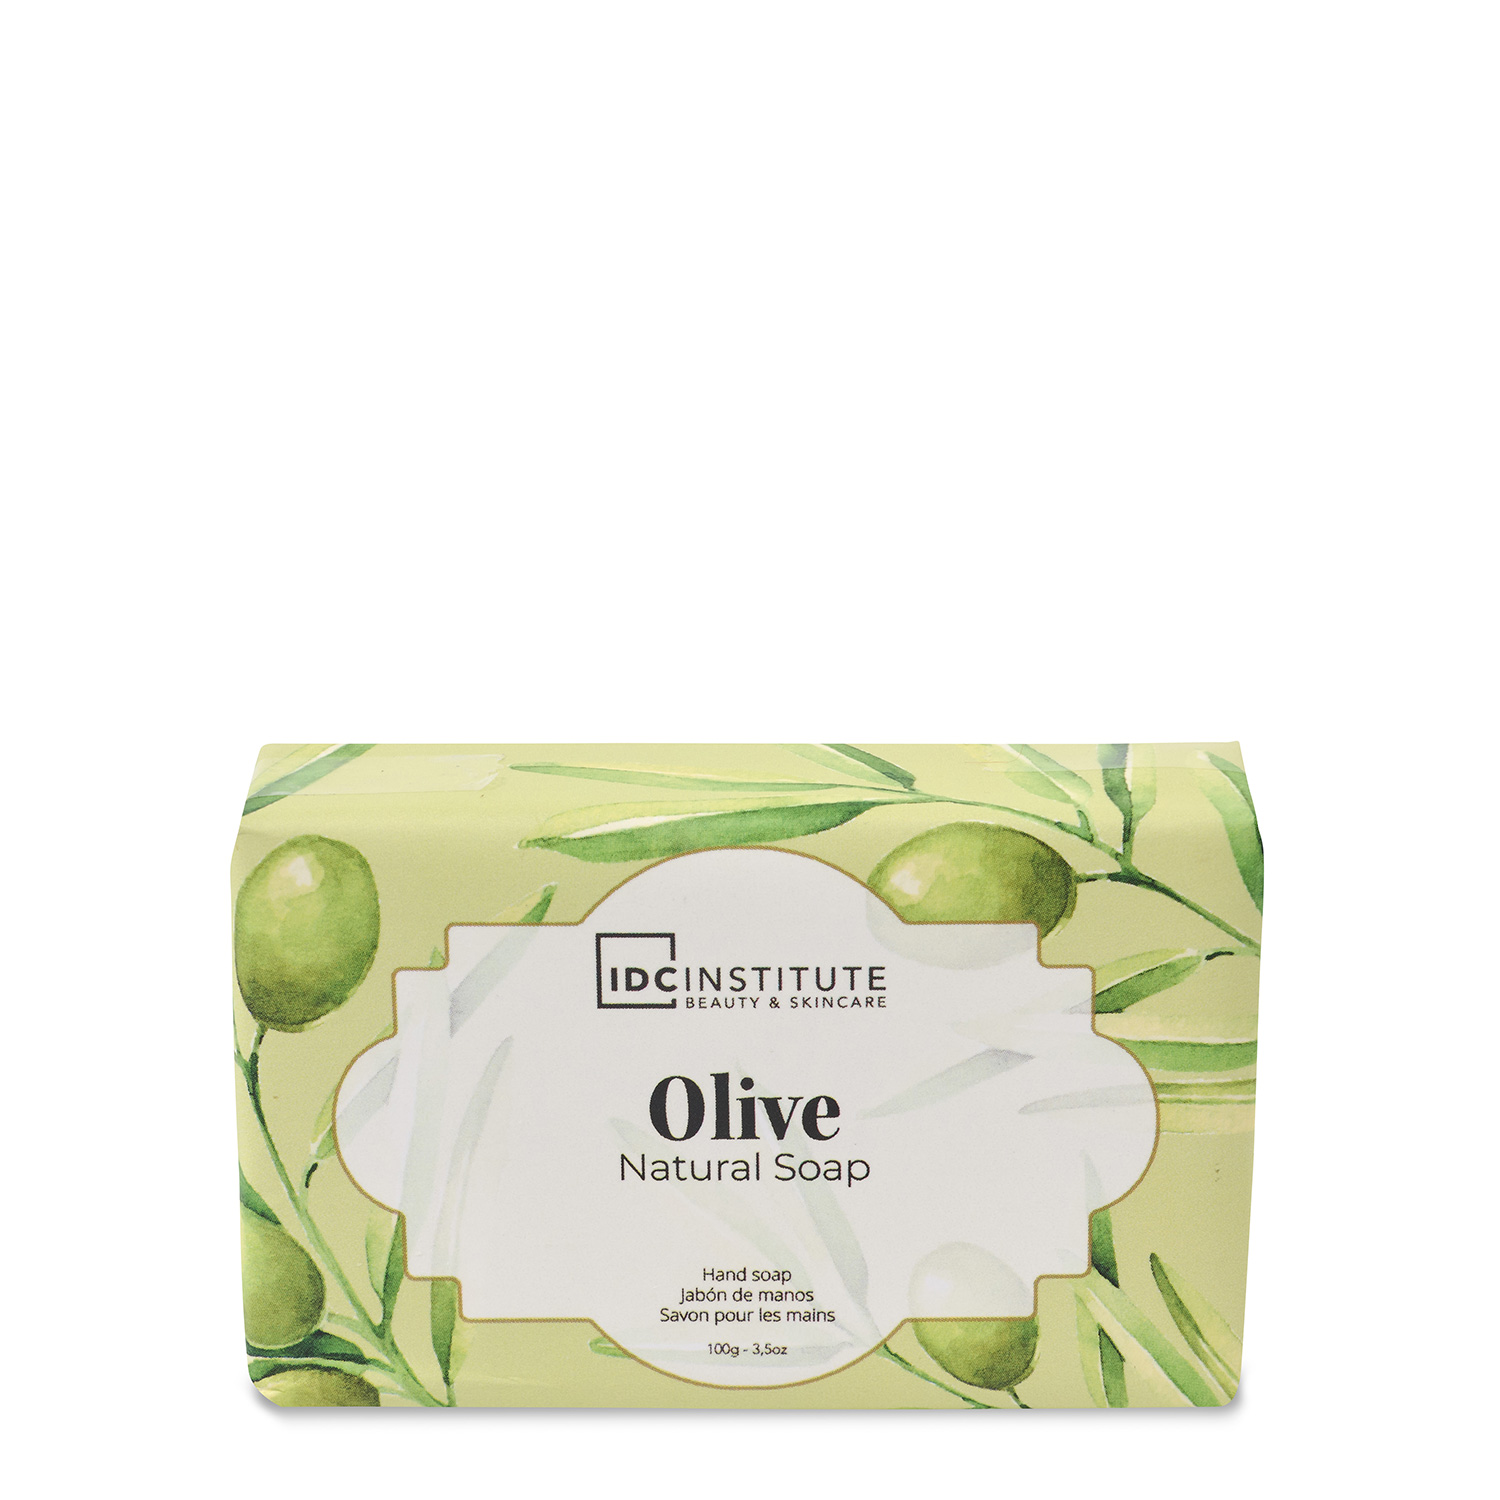 Natural Soap de oliva